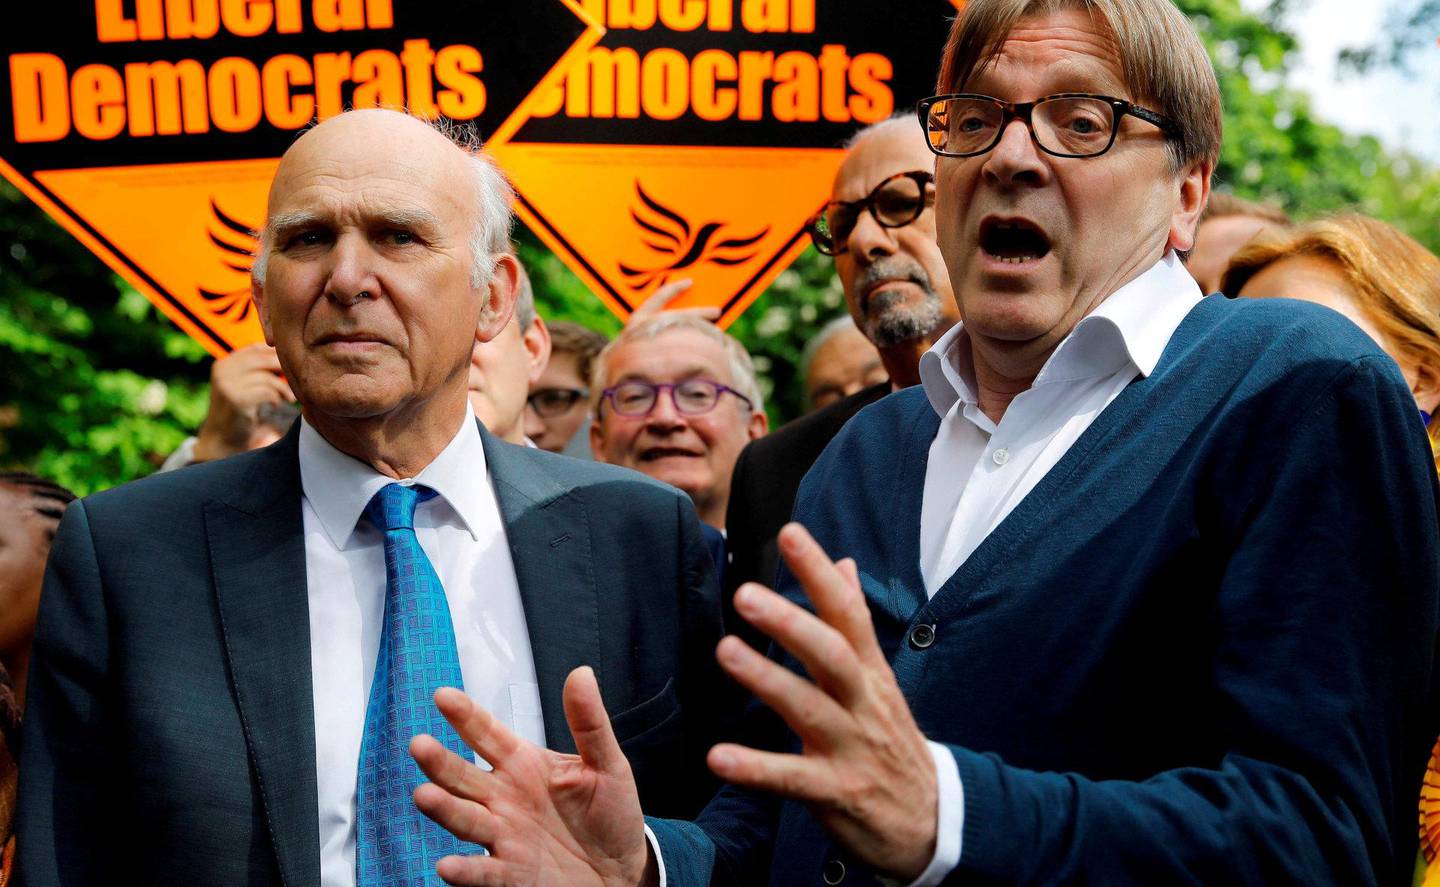 SEILER OPP: Liberaldemokratene tar pro-EU-velgere fra Labour foran EU-valget. Her partileder Vince Cable på stemmesanking sammen med den nederlandske liberale politikeren Guy Verhofstadt i London. FOTO: NTB SCANPIX